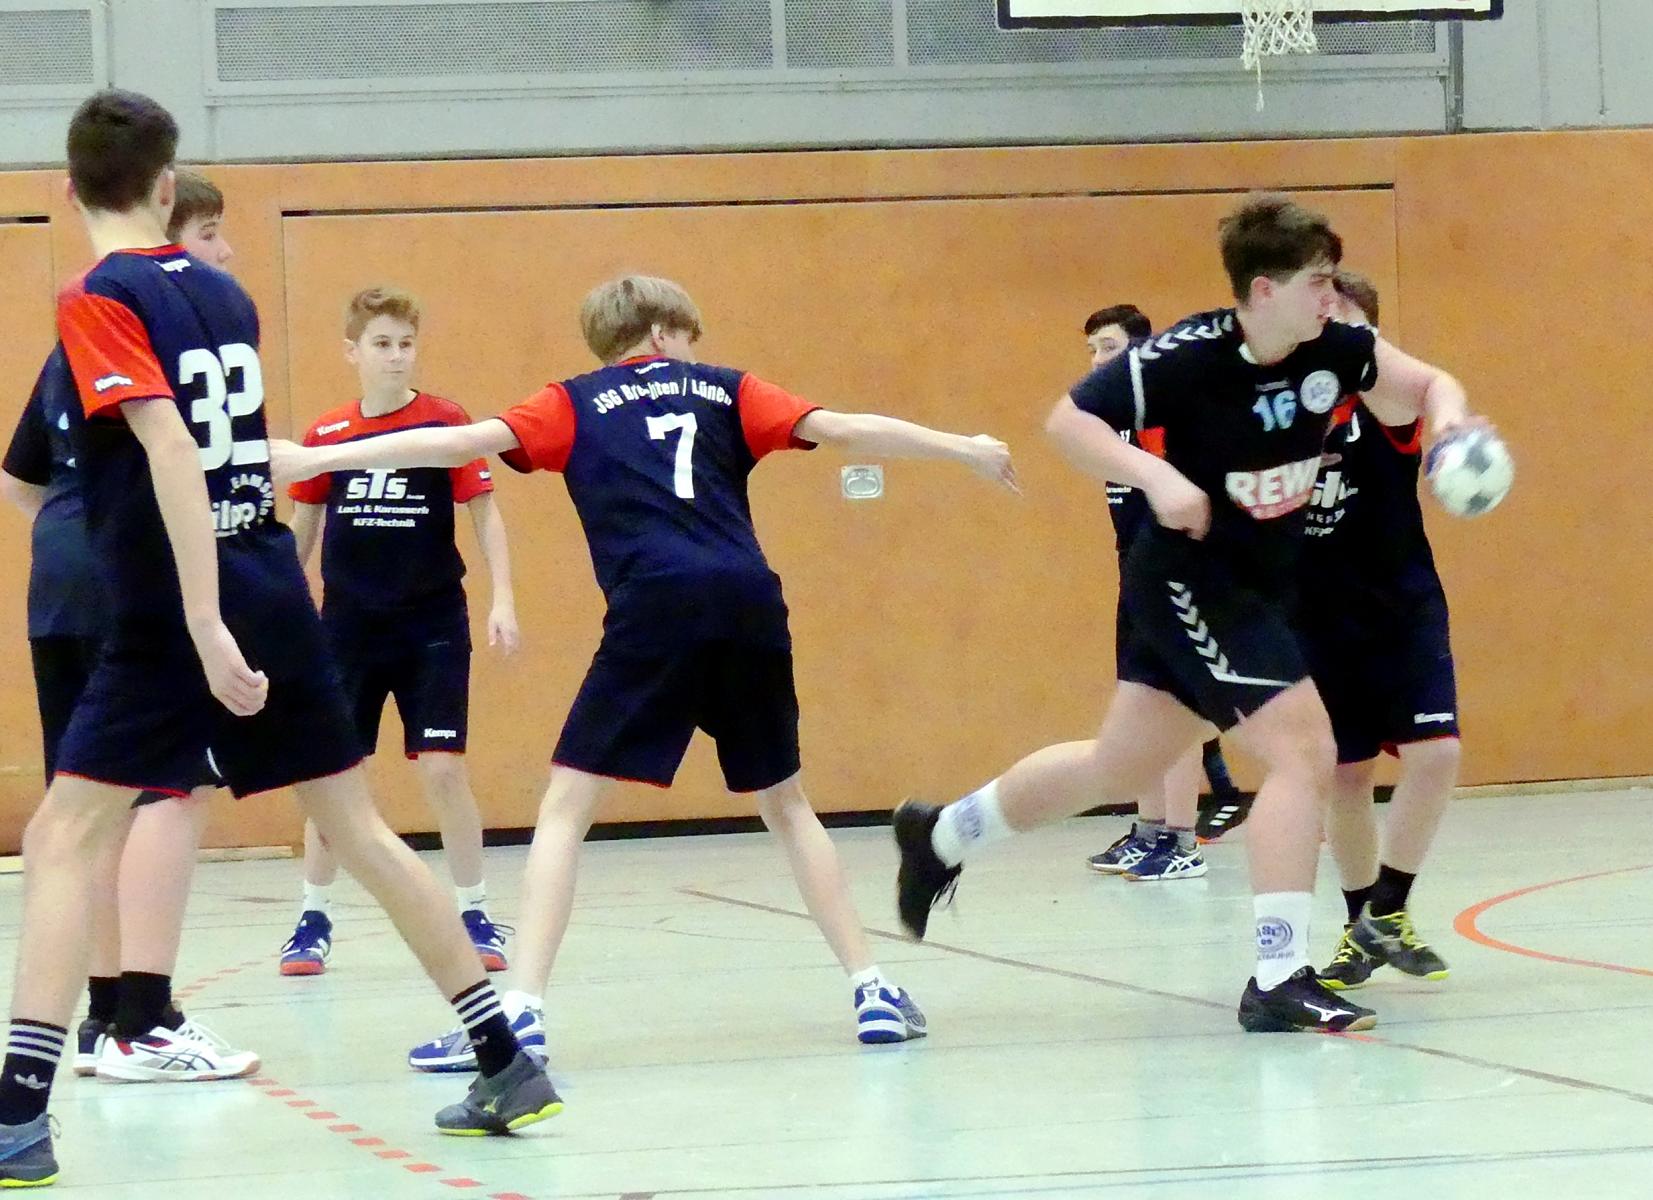 mC-Handball